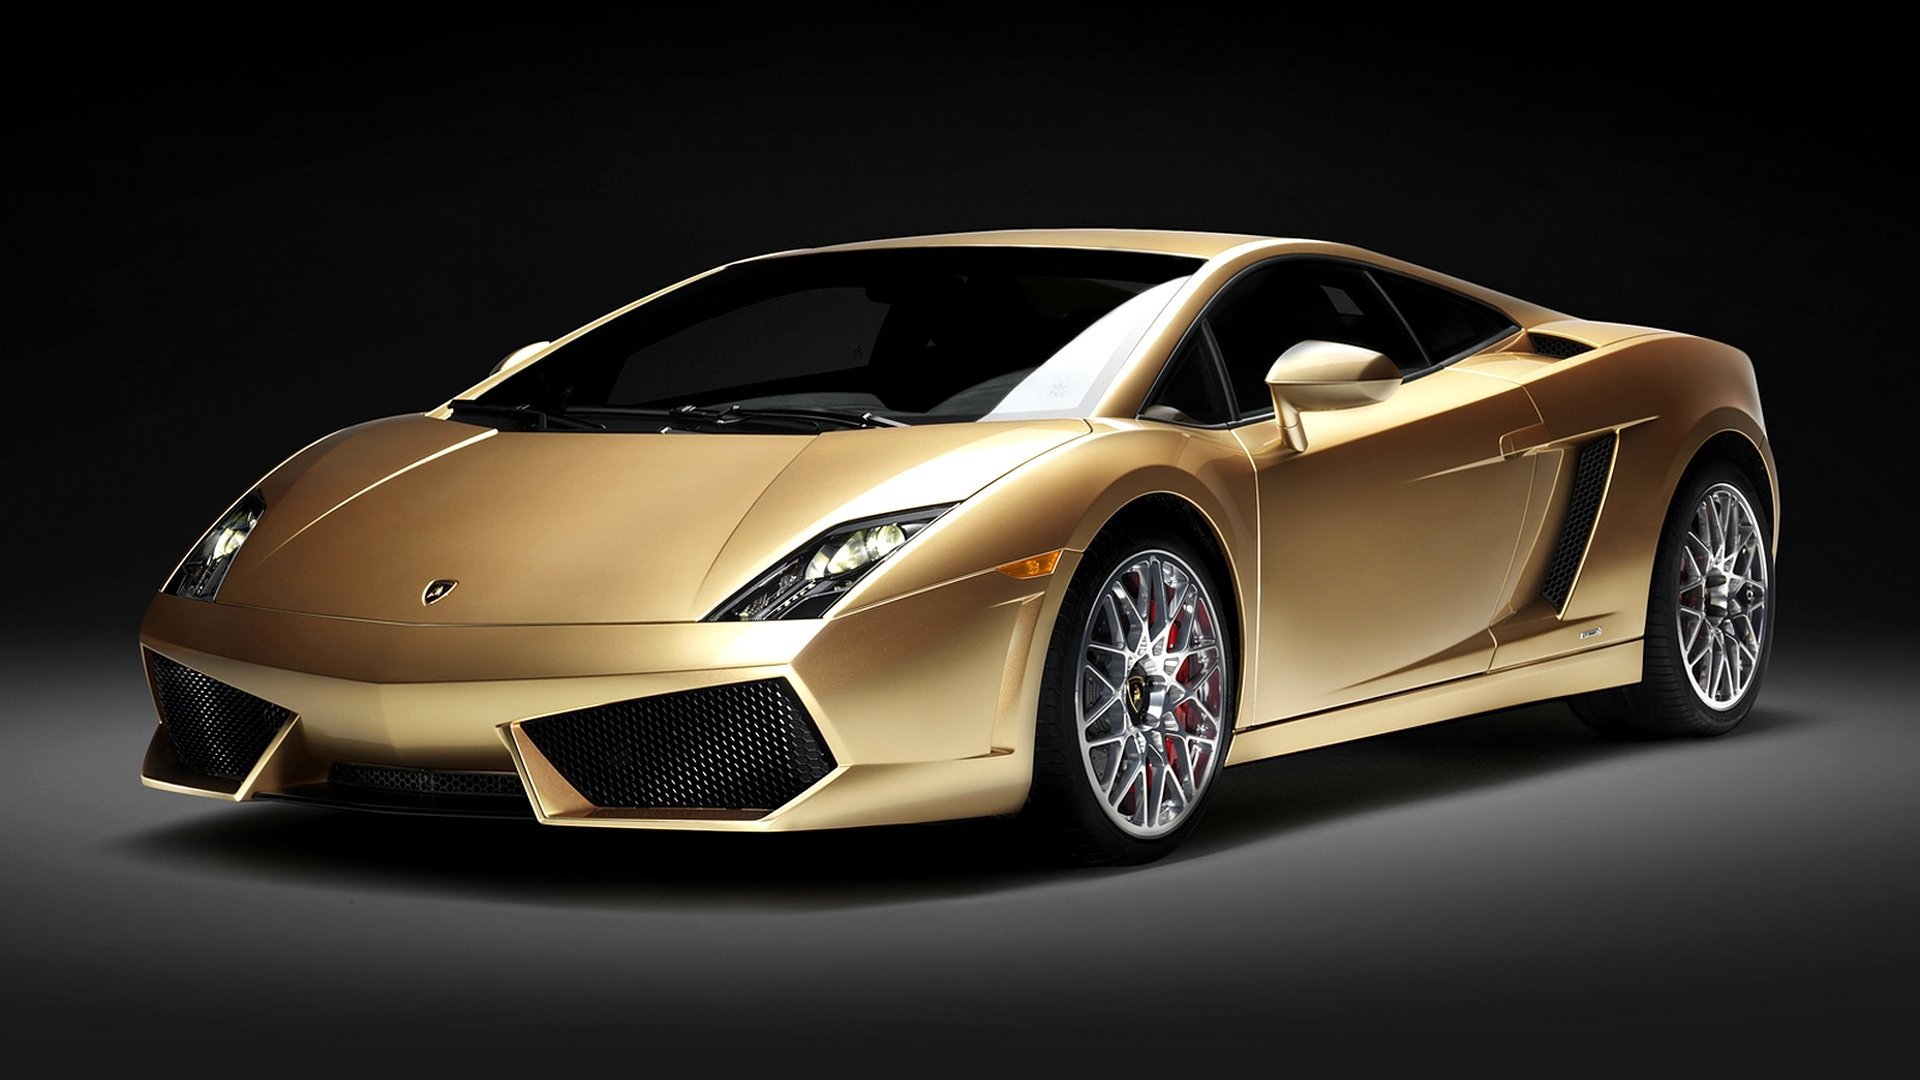 Lamborghini Gallardo Wallpapers Images Photos Pictures ...